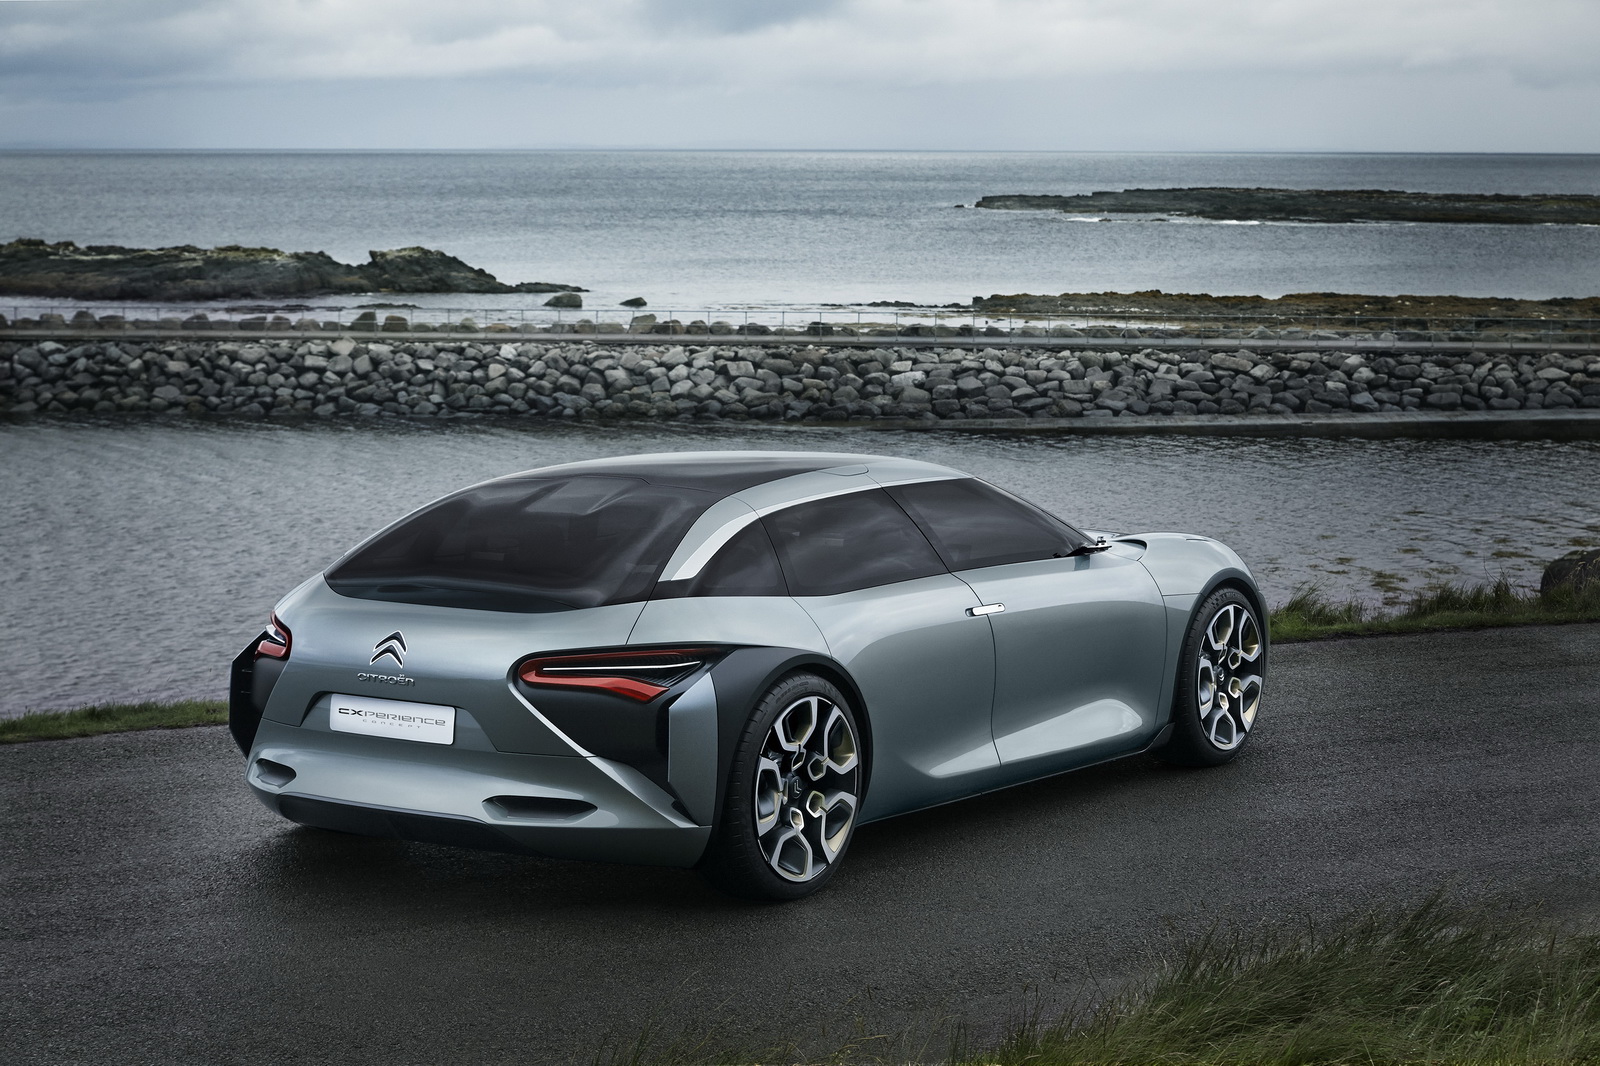 Citroën afirma que reinventará el segmento sedán con el nuevo C5